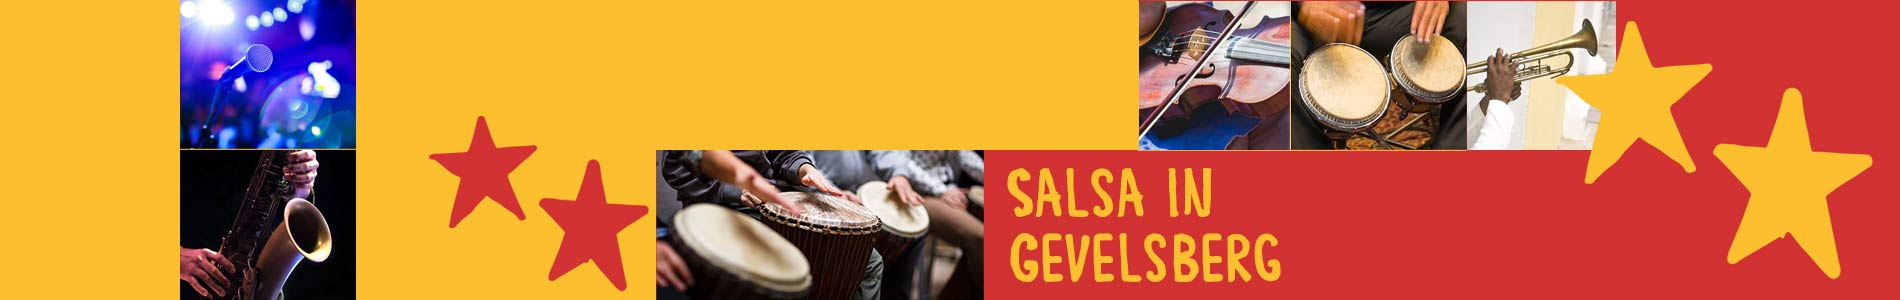 Salsa in Gevelsberg – Salsa lernen und tanzen, Tanzkurse, Partys, Veranstaltungen